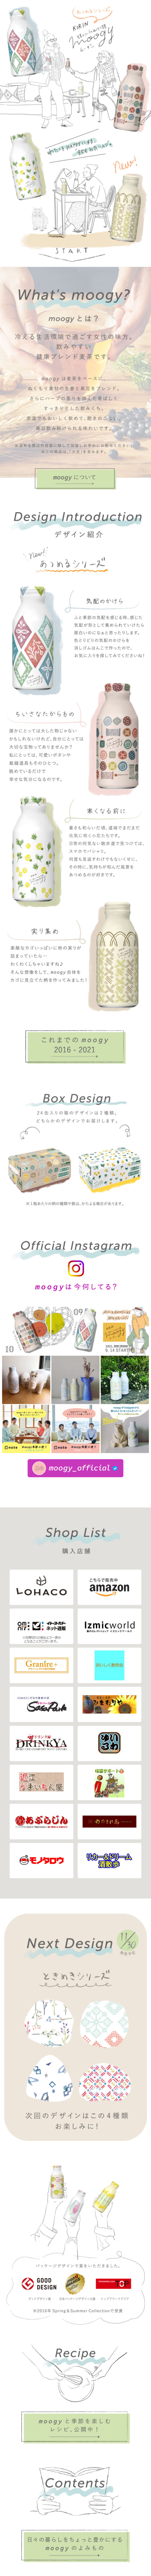 moogy_sp_1